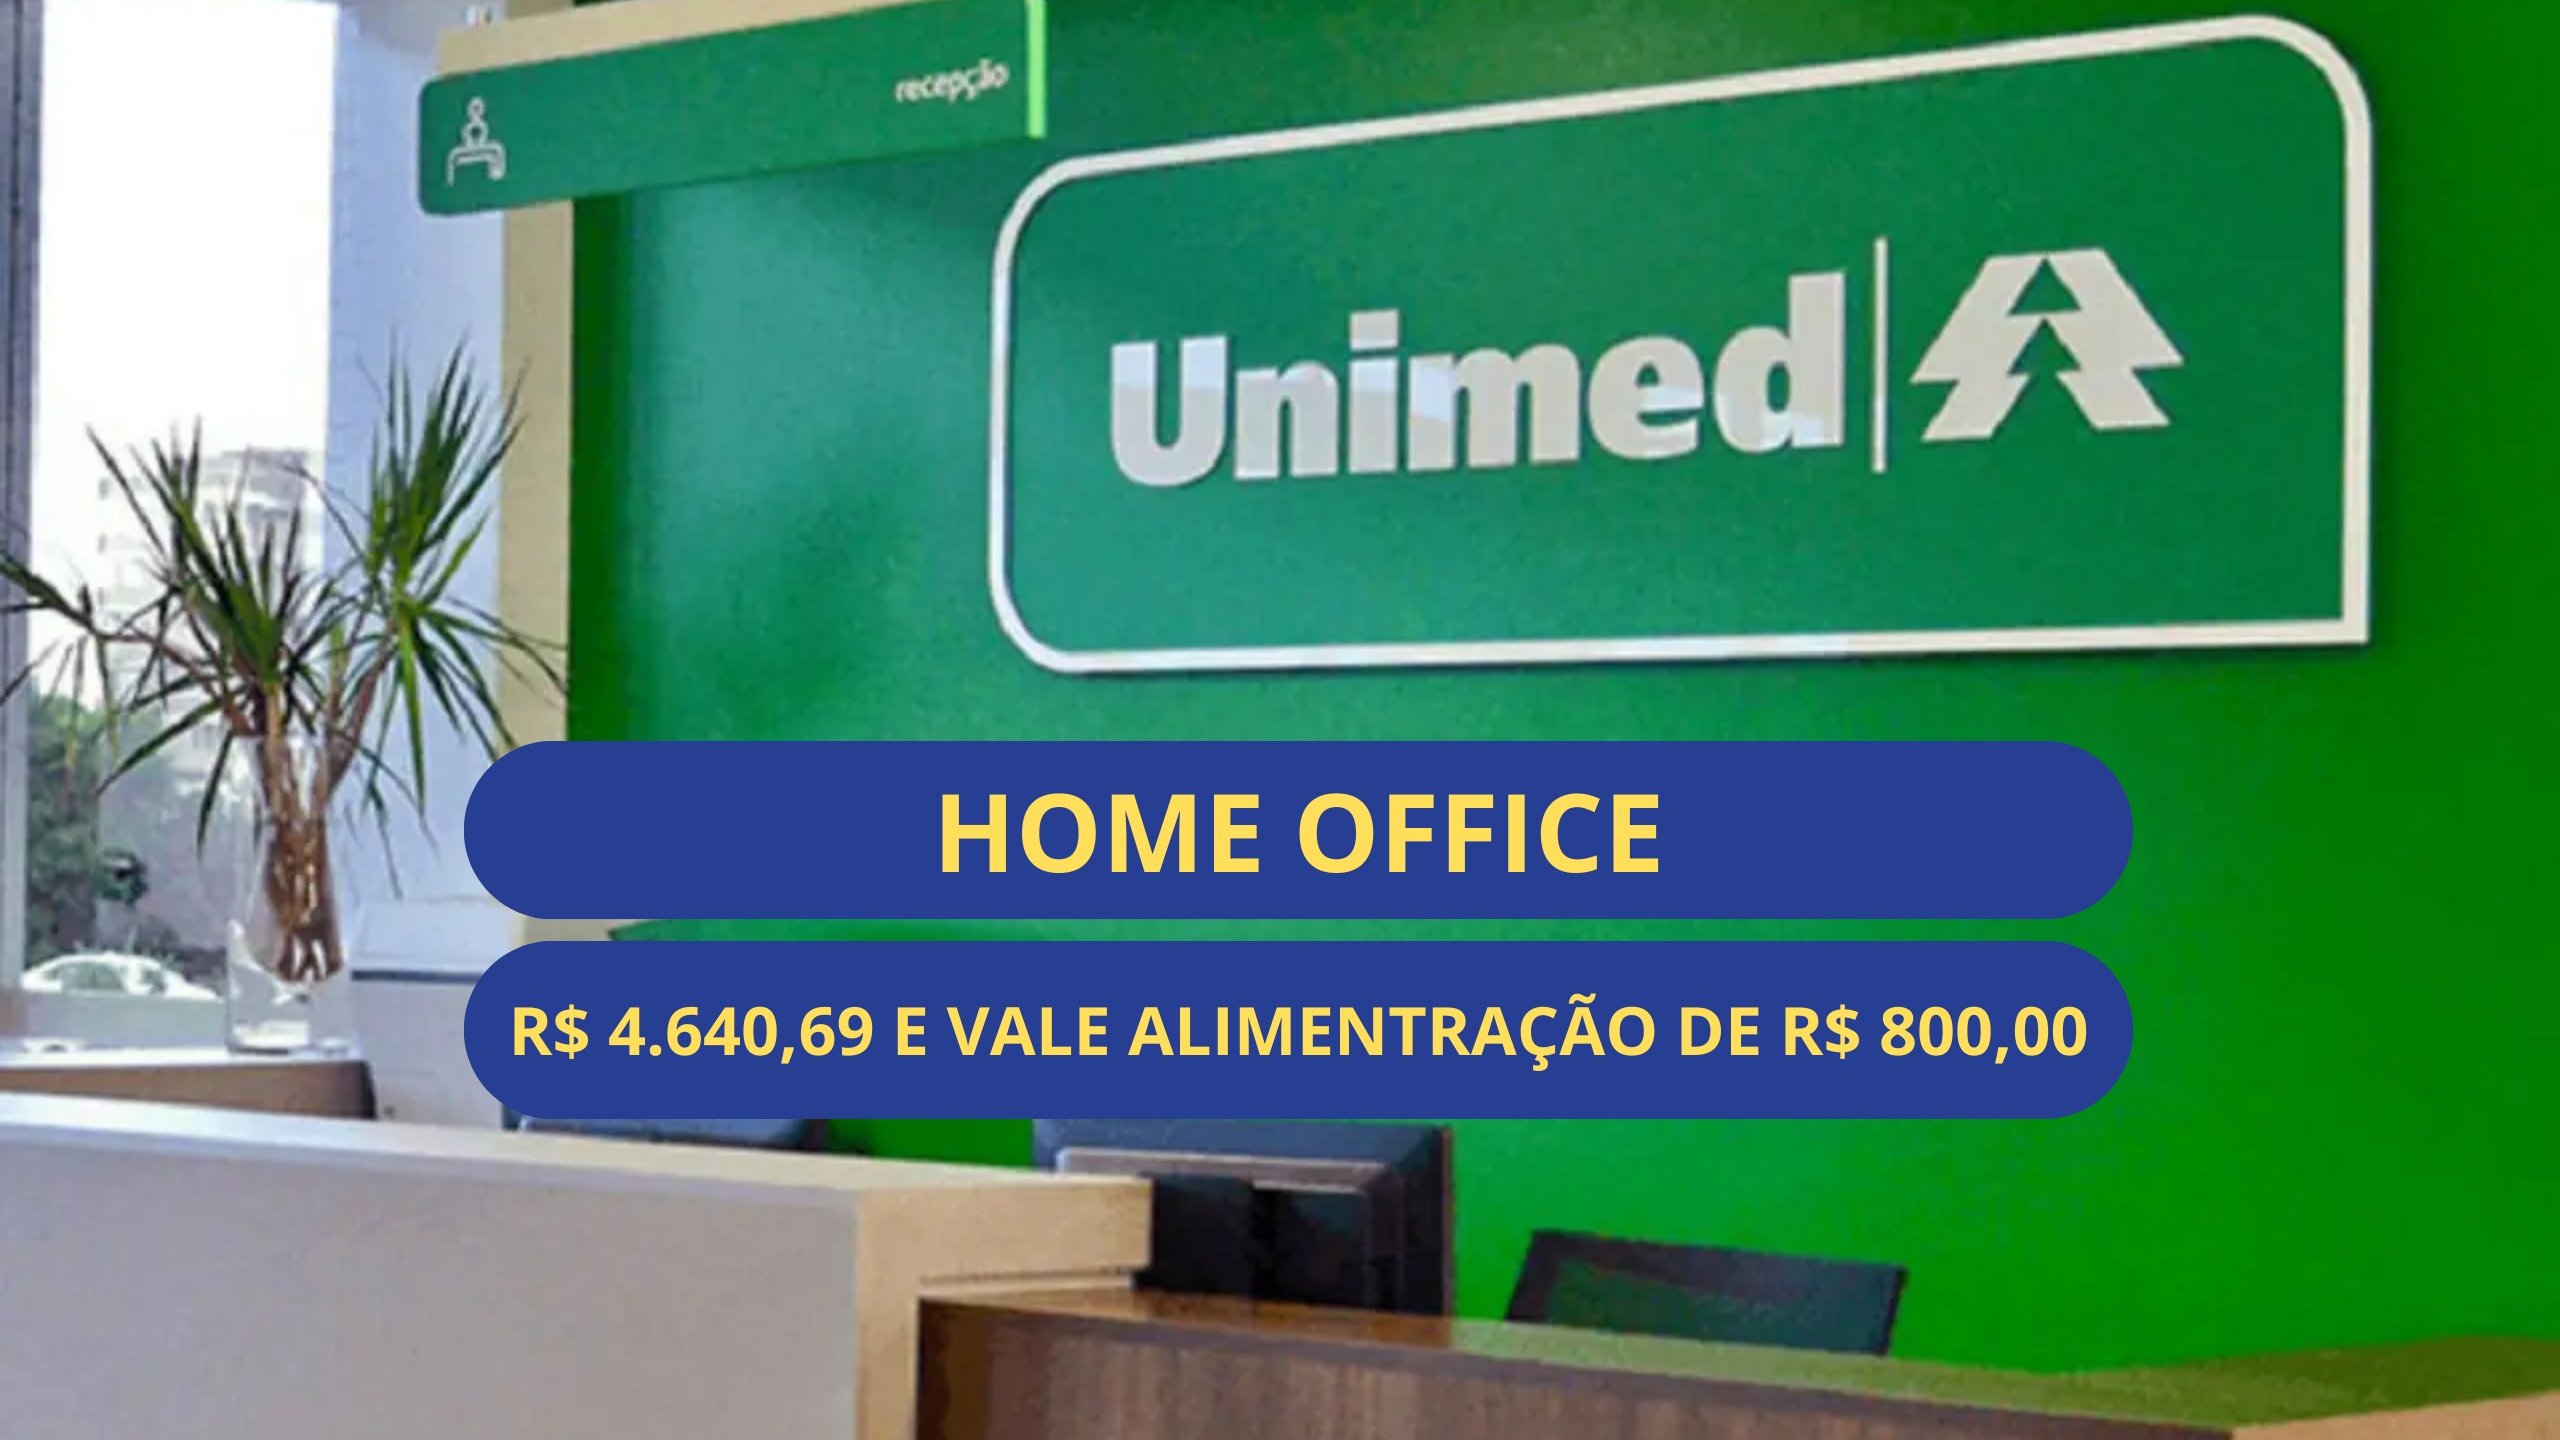 HOME OFFICE: Unimed abre vagas para trabalhar de casa ONLINE como Digitador  de Faturas (temporário), com salário de até R$ 1.800,00 - Empregos na Bahia